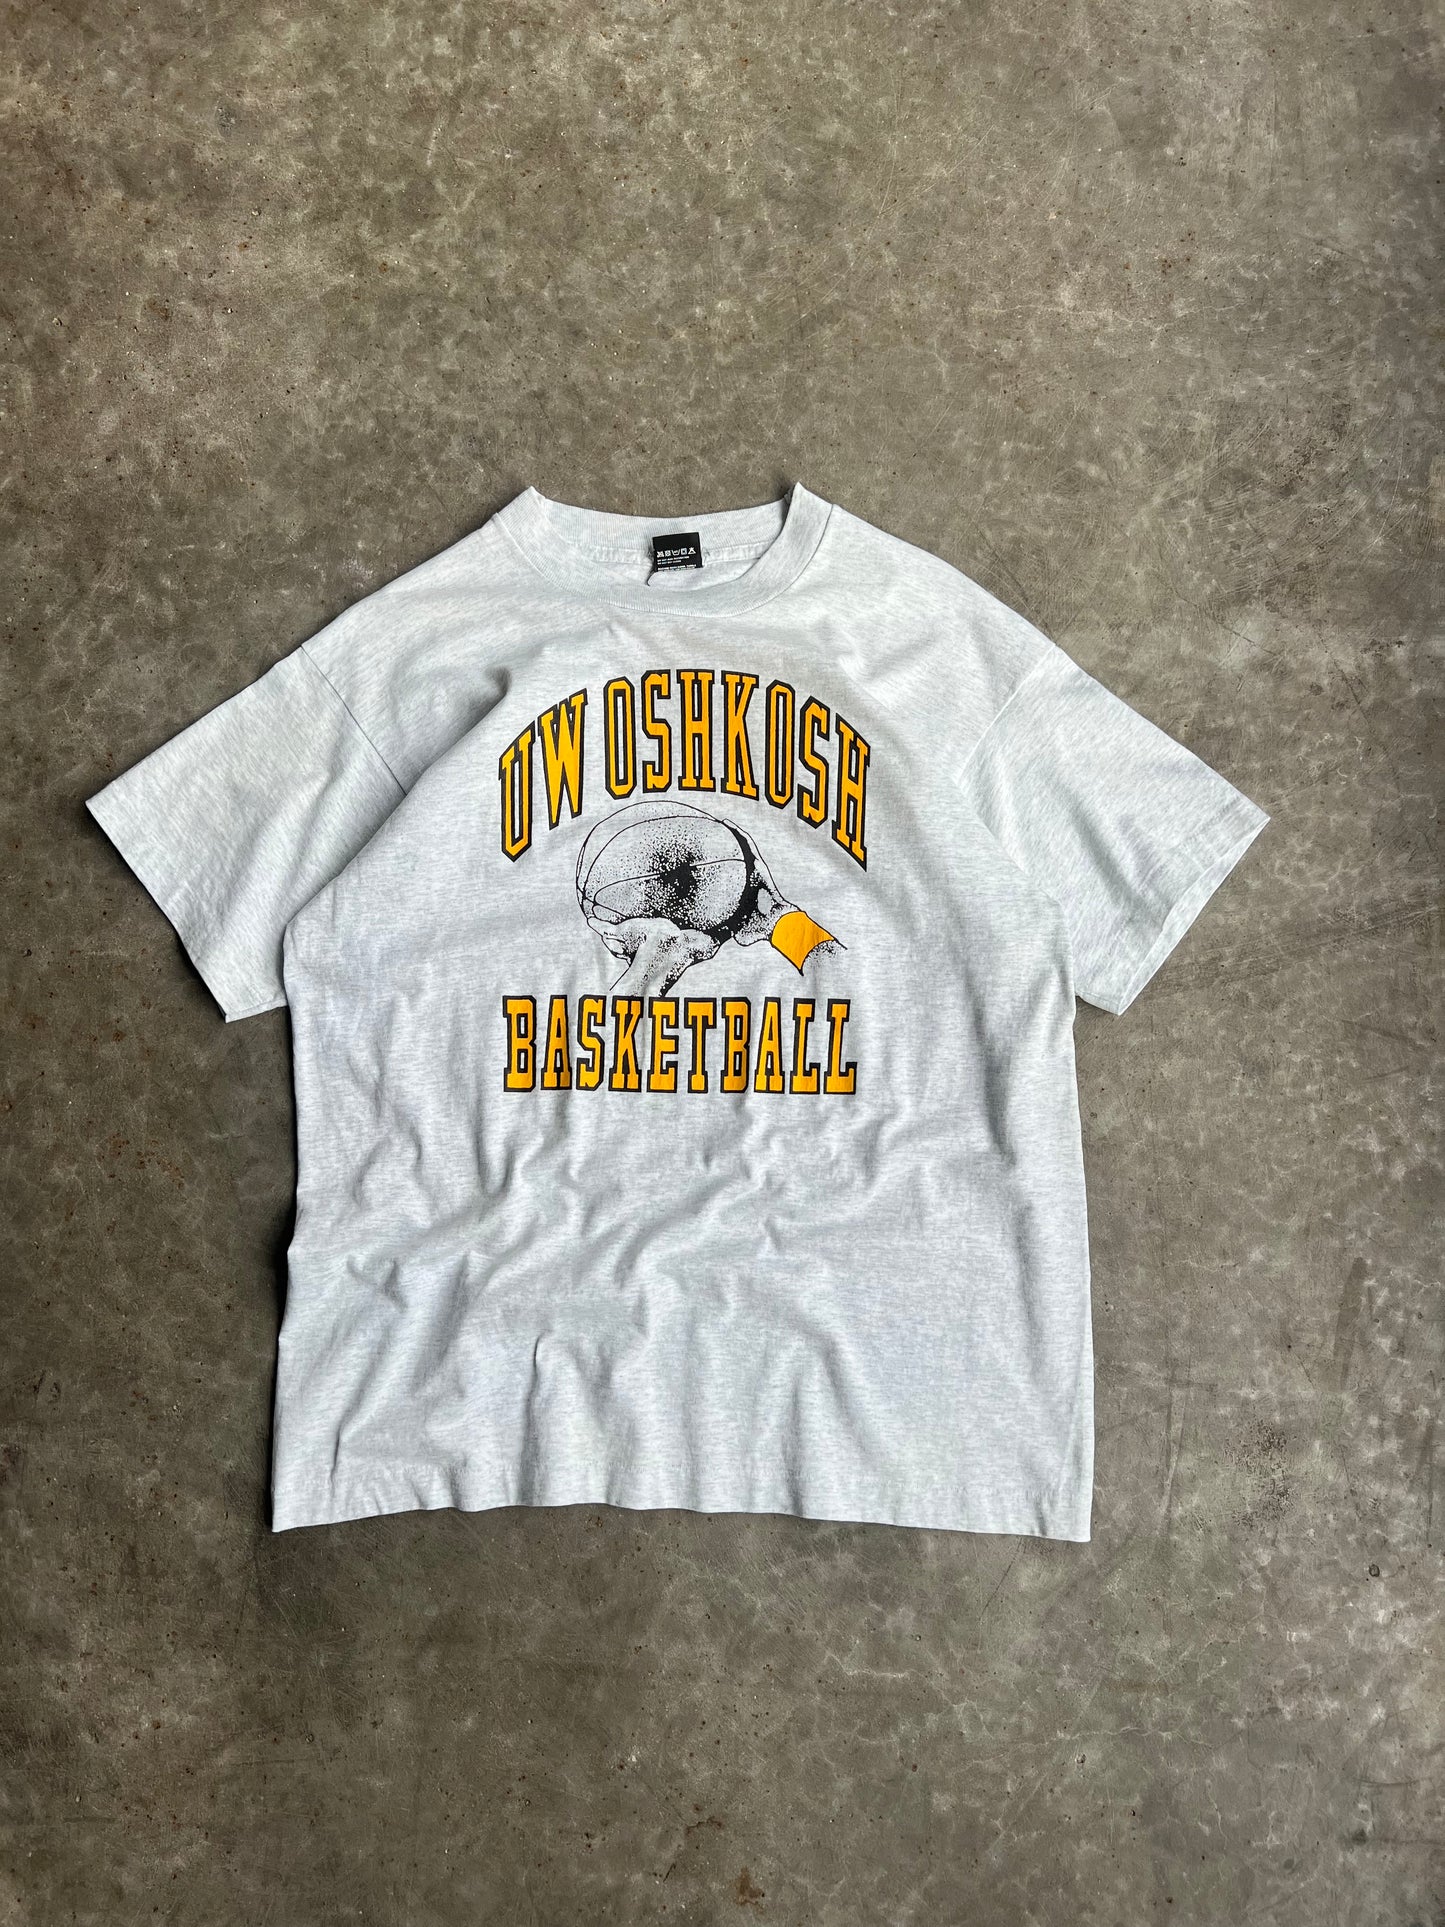 Vintage Oshkosh Basketball Shirt - Xl